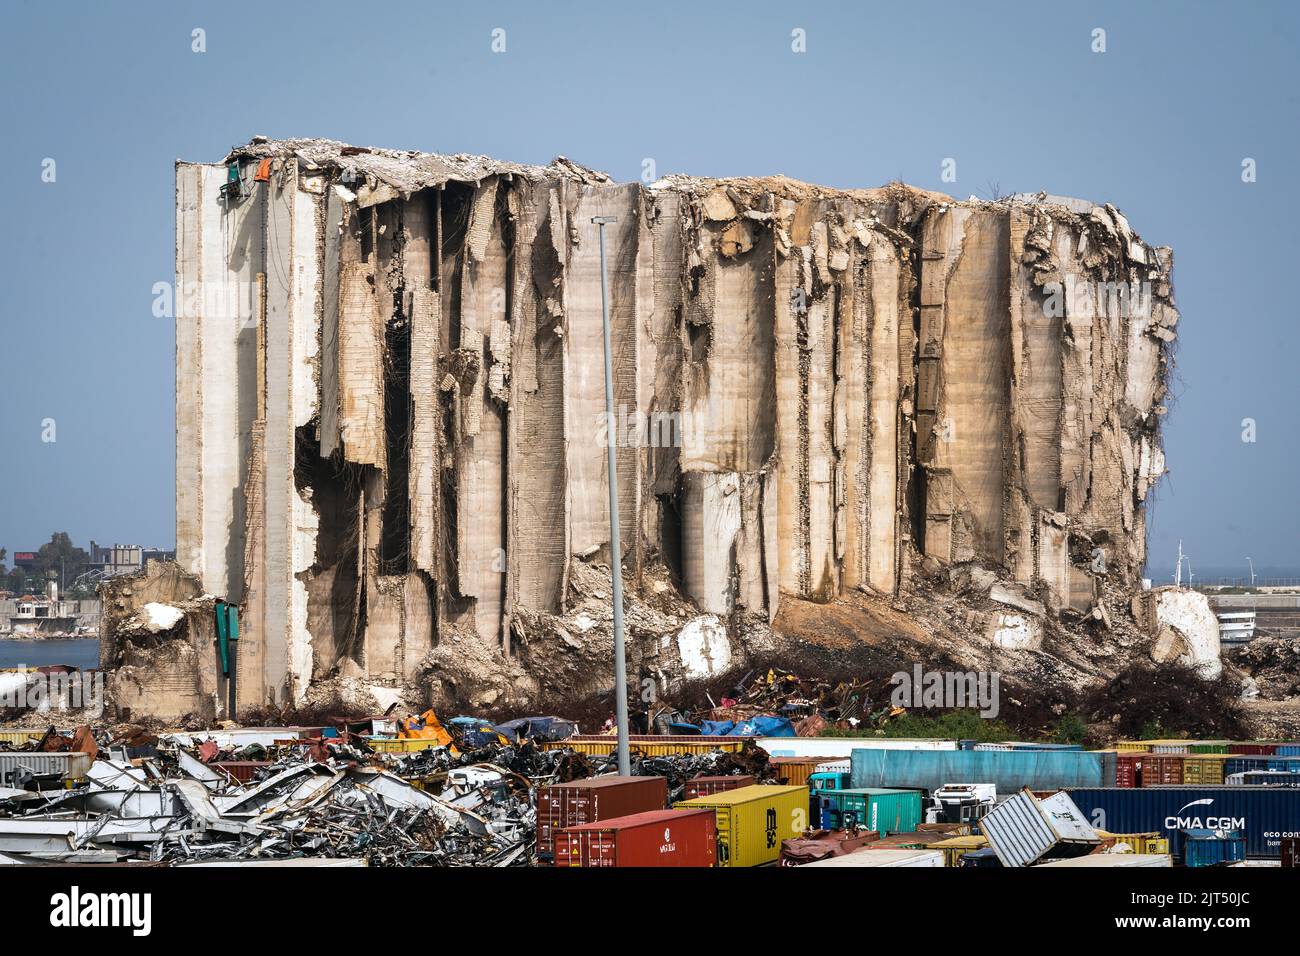 Beirut, Libano: Distrutto silos di grano dietro gru e detriti a causa della massiccia esplosione di 2.750 tonnellate di nitrato di ammonio immagazzinato nel porto della città il 8/4/2020 Foto Stock